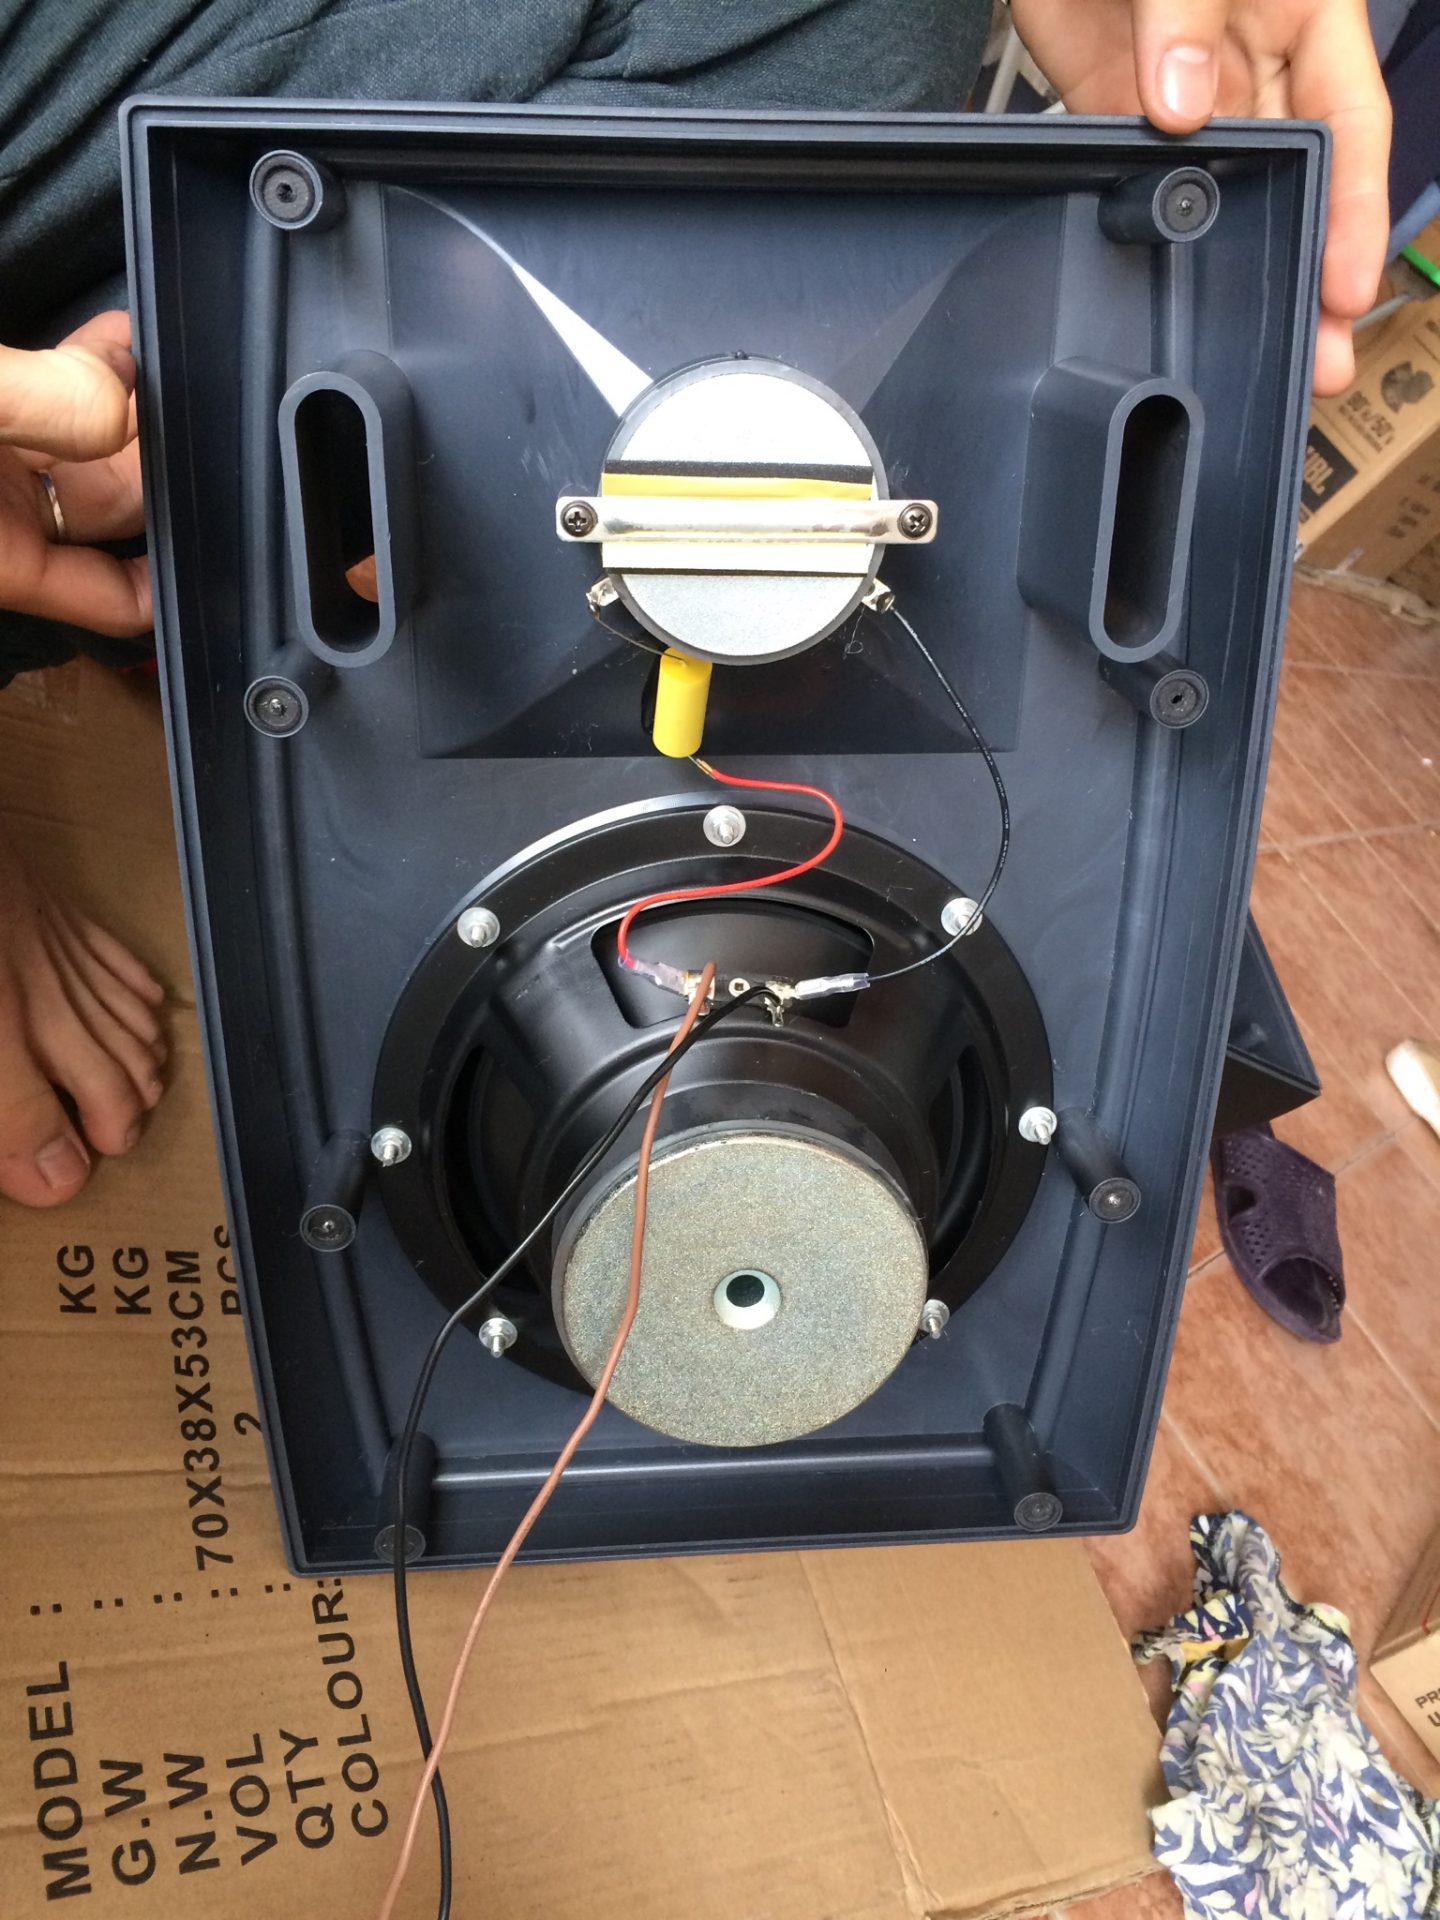 Loa hộp OBT 582 công suất 30W chất âm hay, bass ấm 3